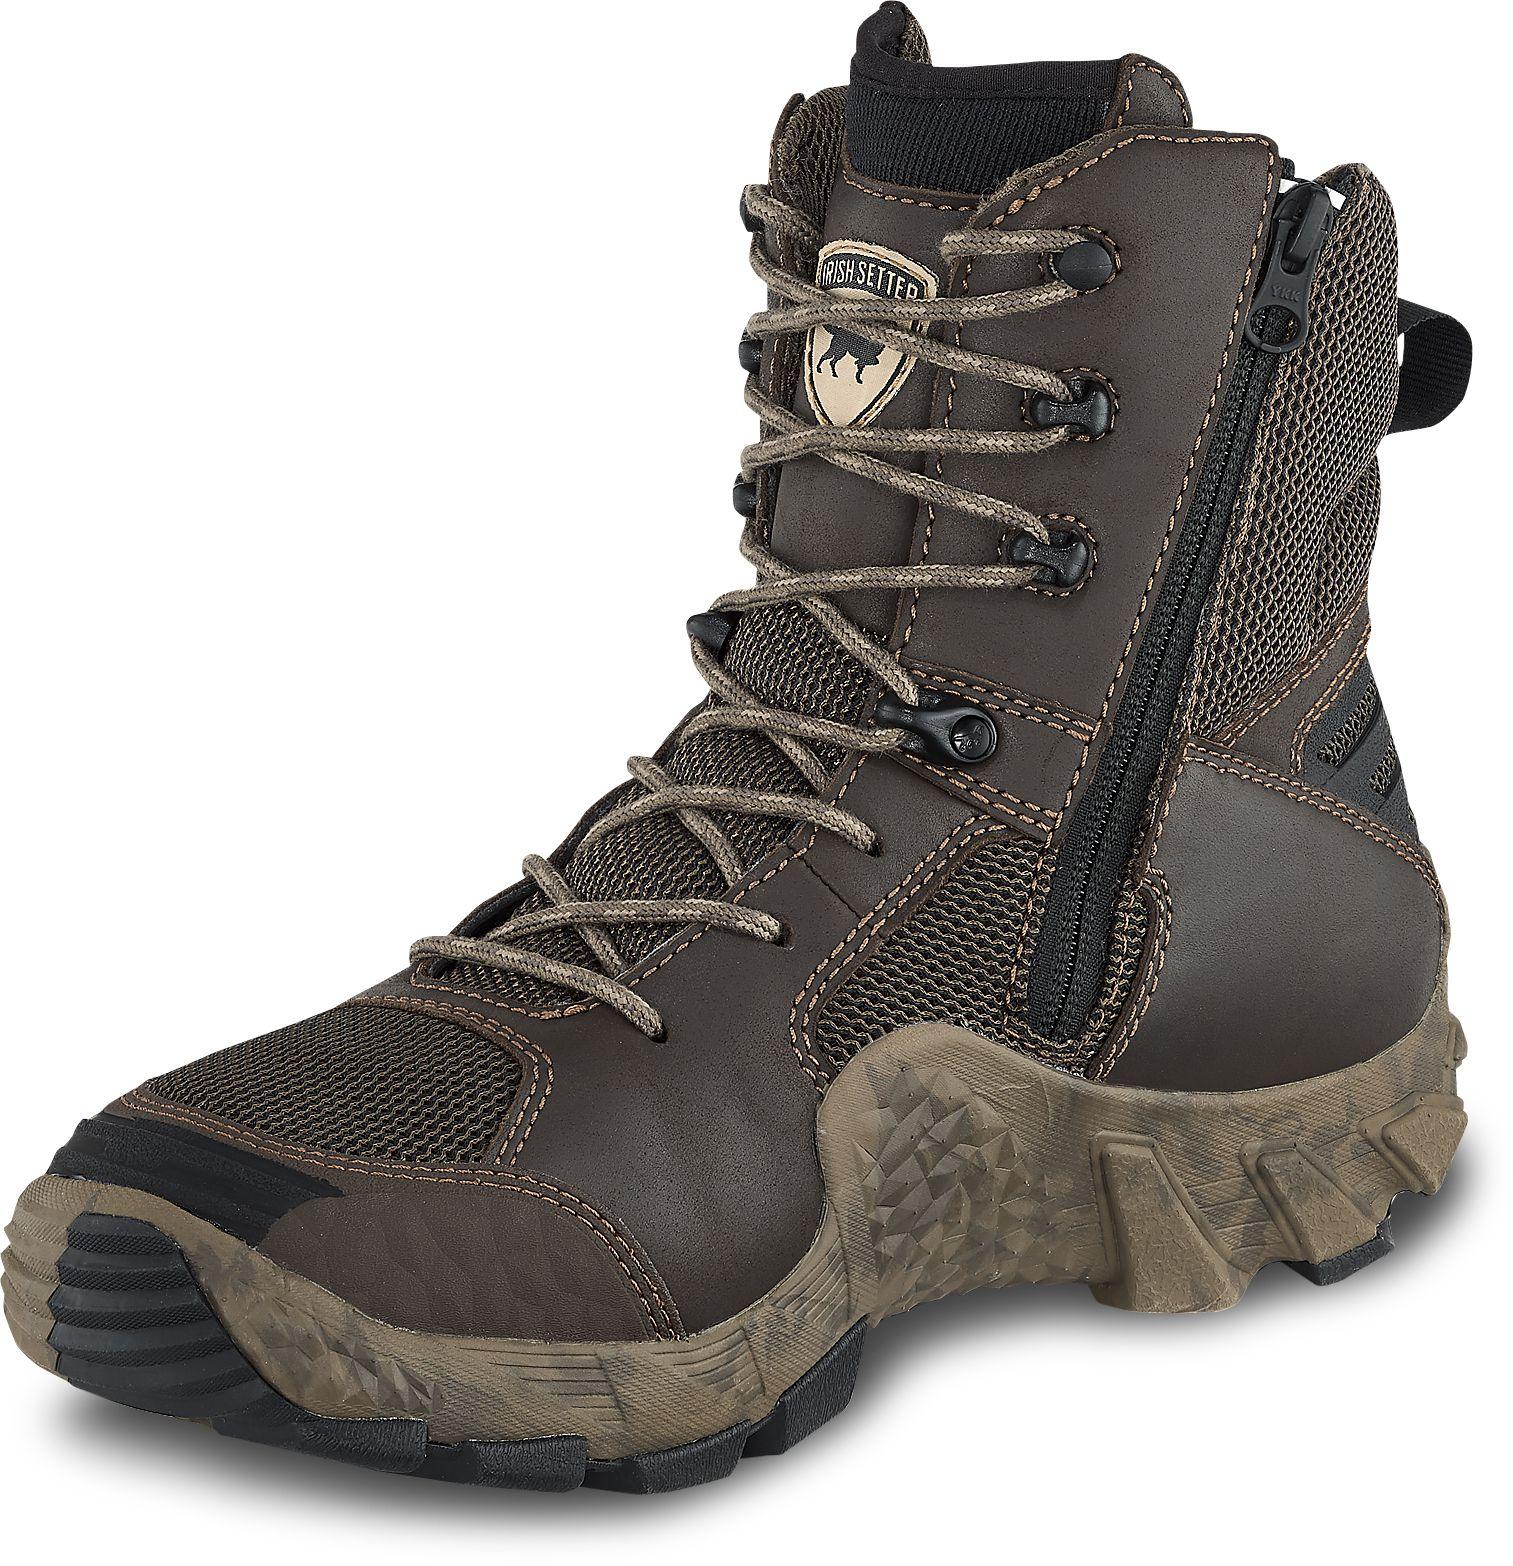 Irish Setter VaprTrek Hunting Boots Leather Realtree EDGE